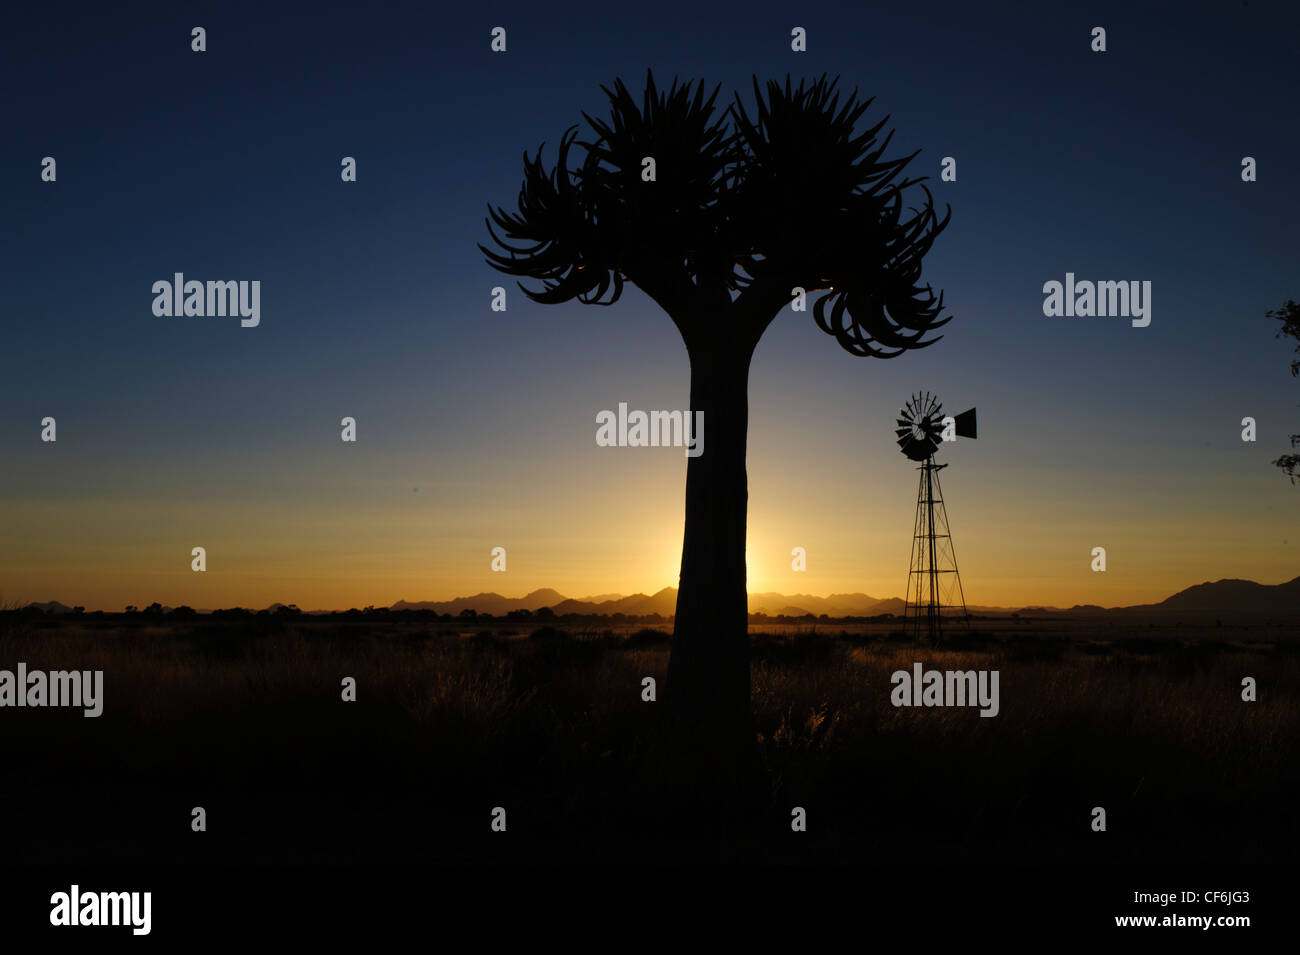 Qiuver tree (Aloe dichotoma) et le moulin au coucher du soleil, Désert du Namib, Namibie. Banque D'Images